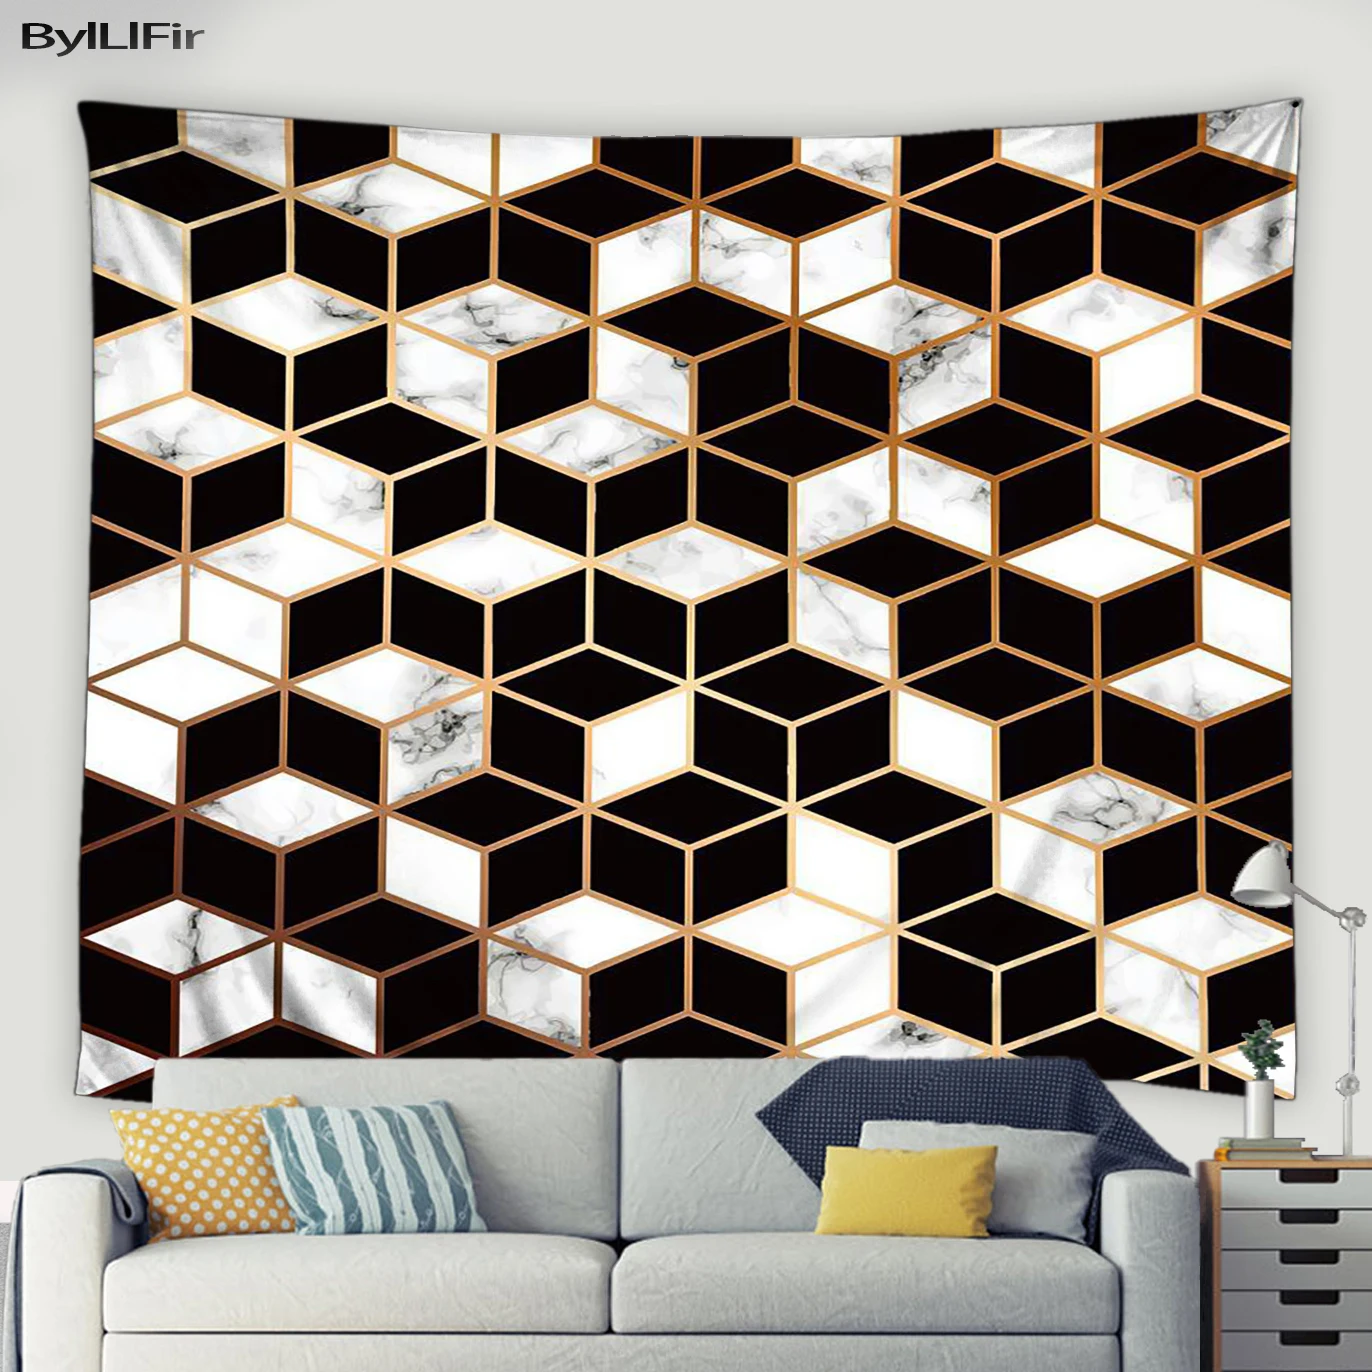 

3D гобелен с геометрическим зрением, настенный подвесной Черный Белый Абстрактный мраморный узор, спальня, Фреска, комната в общежитии, художественный декор, настенное одеяло